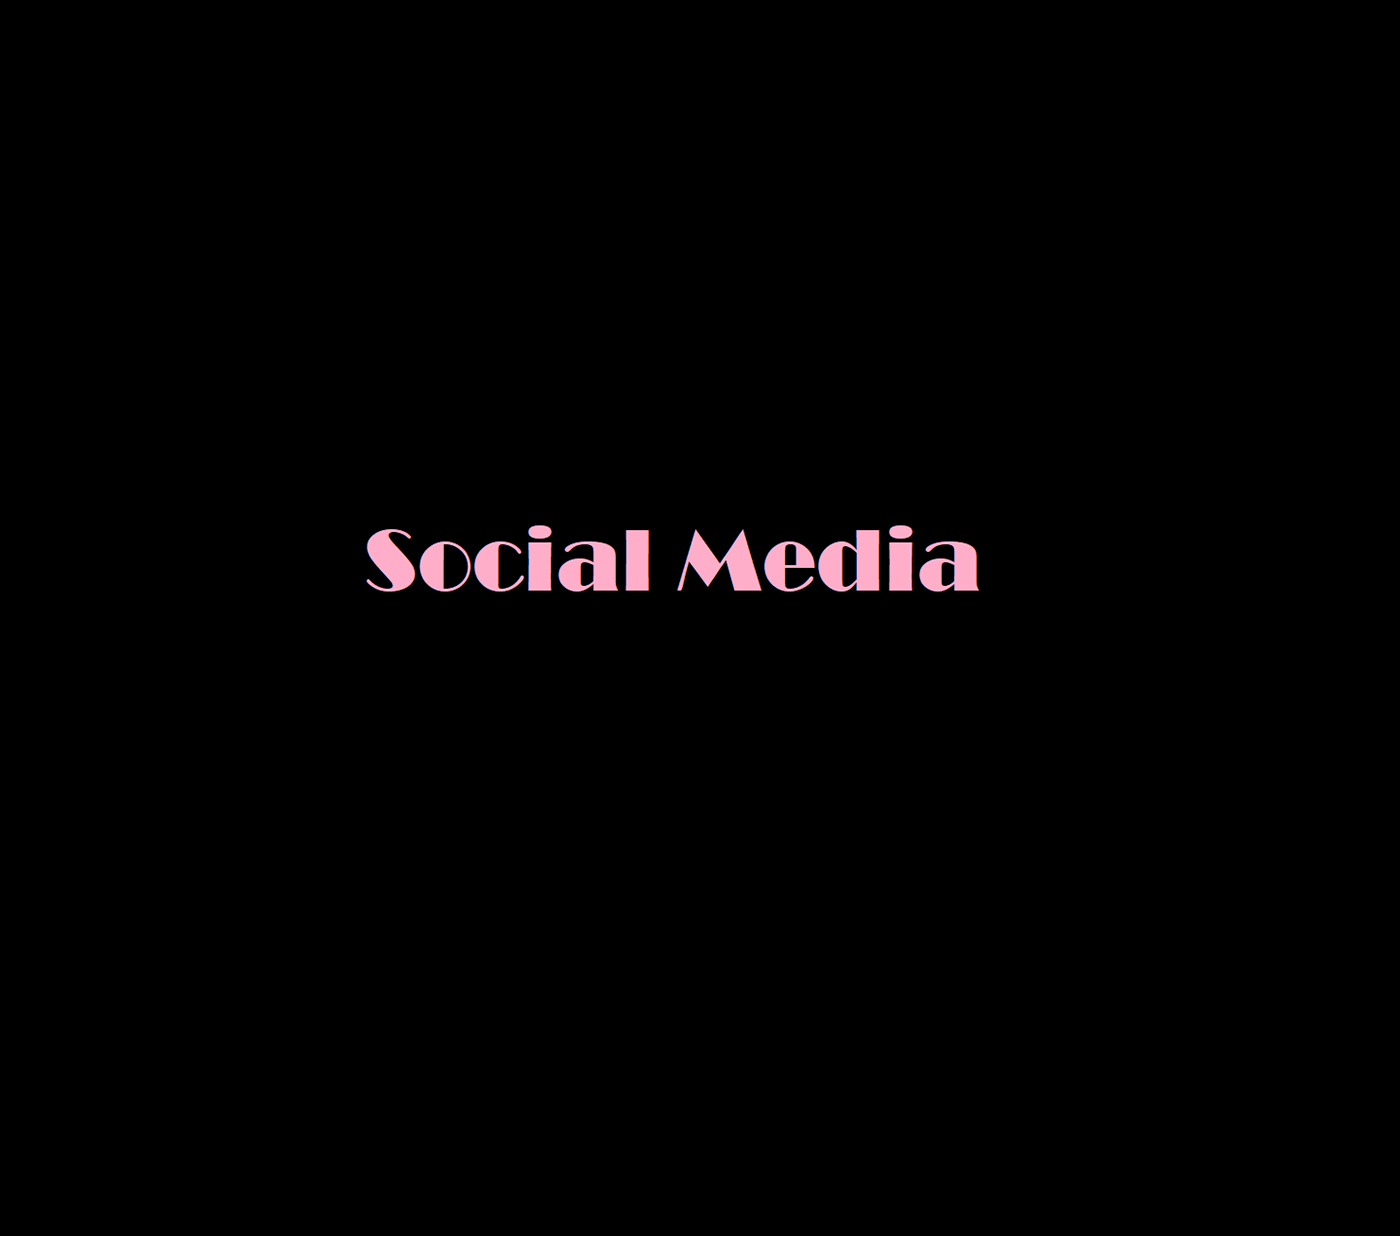 facebook instagram produção de conteúdo Redação Redes Sociais social media twitter